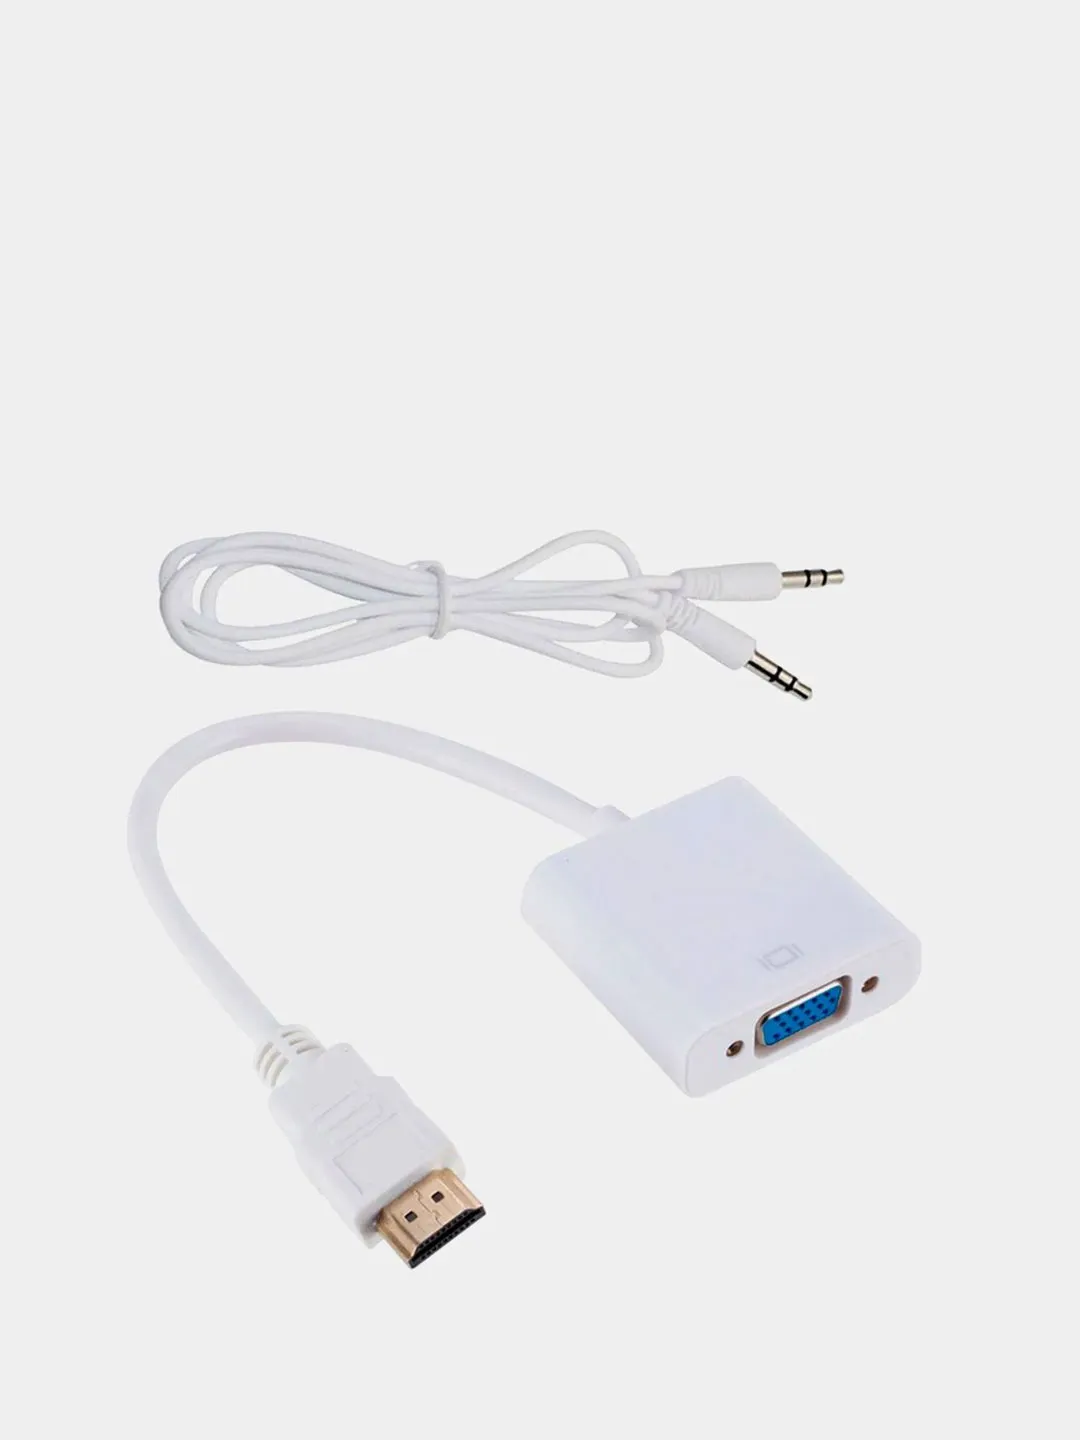 Как подключить телефон к телевизору: инструкция для USB-кабеля и Wi-Fi